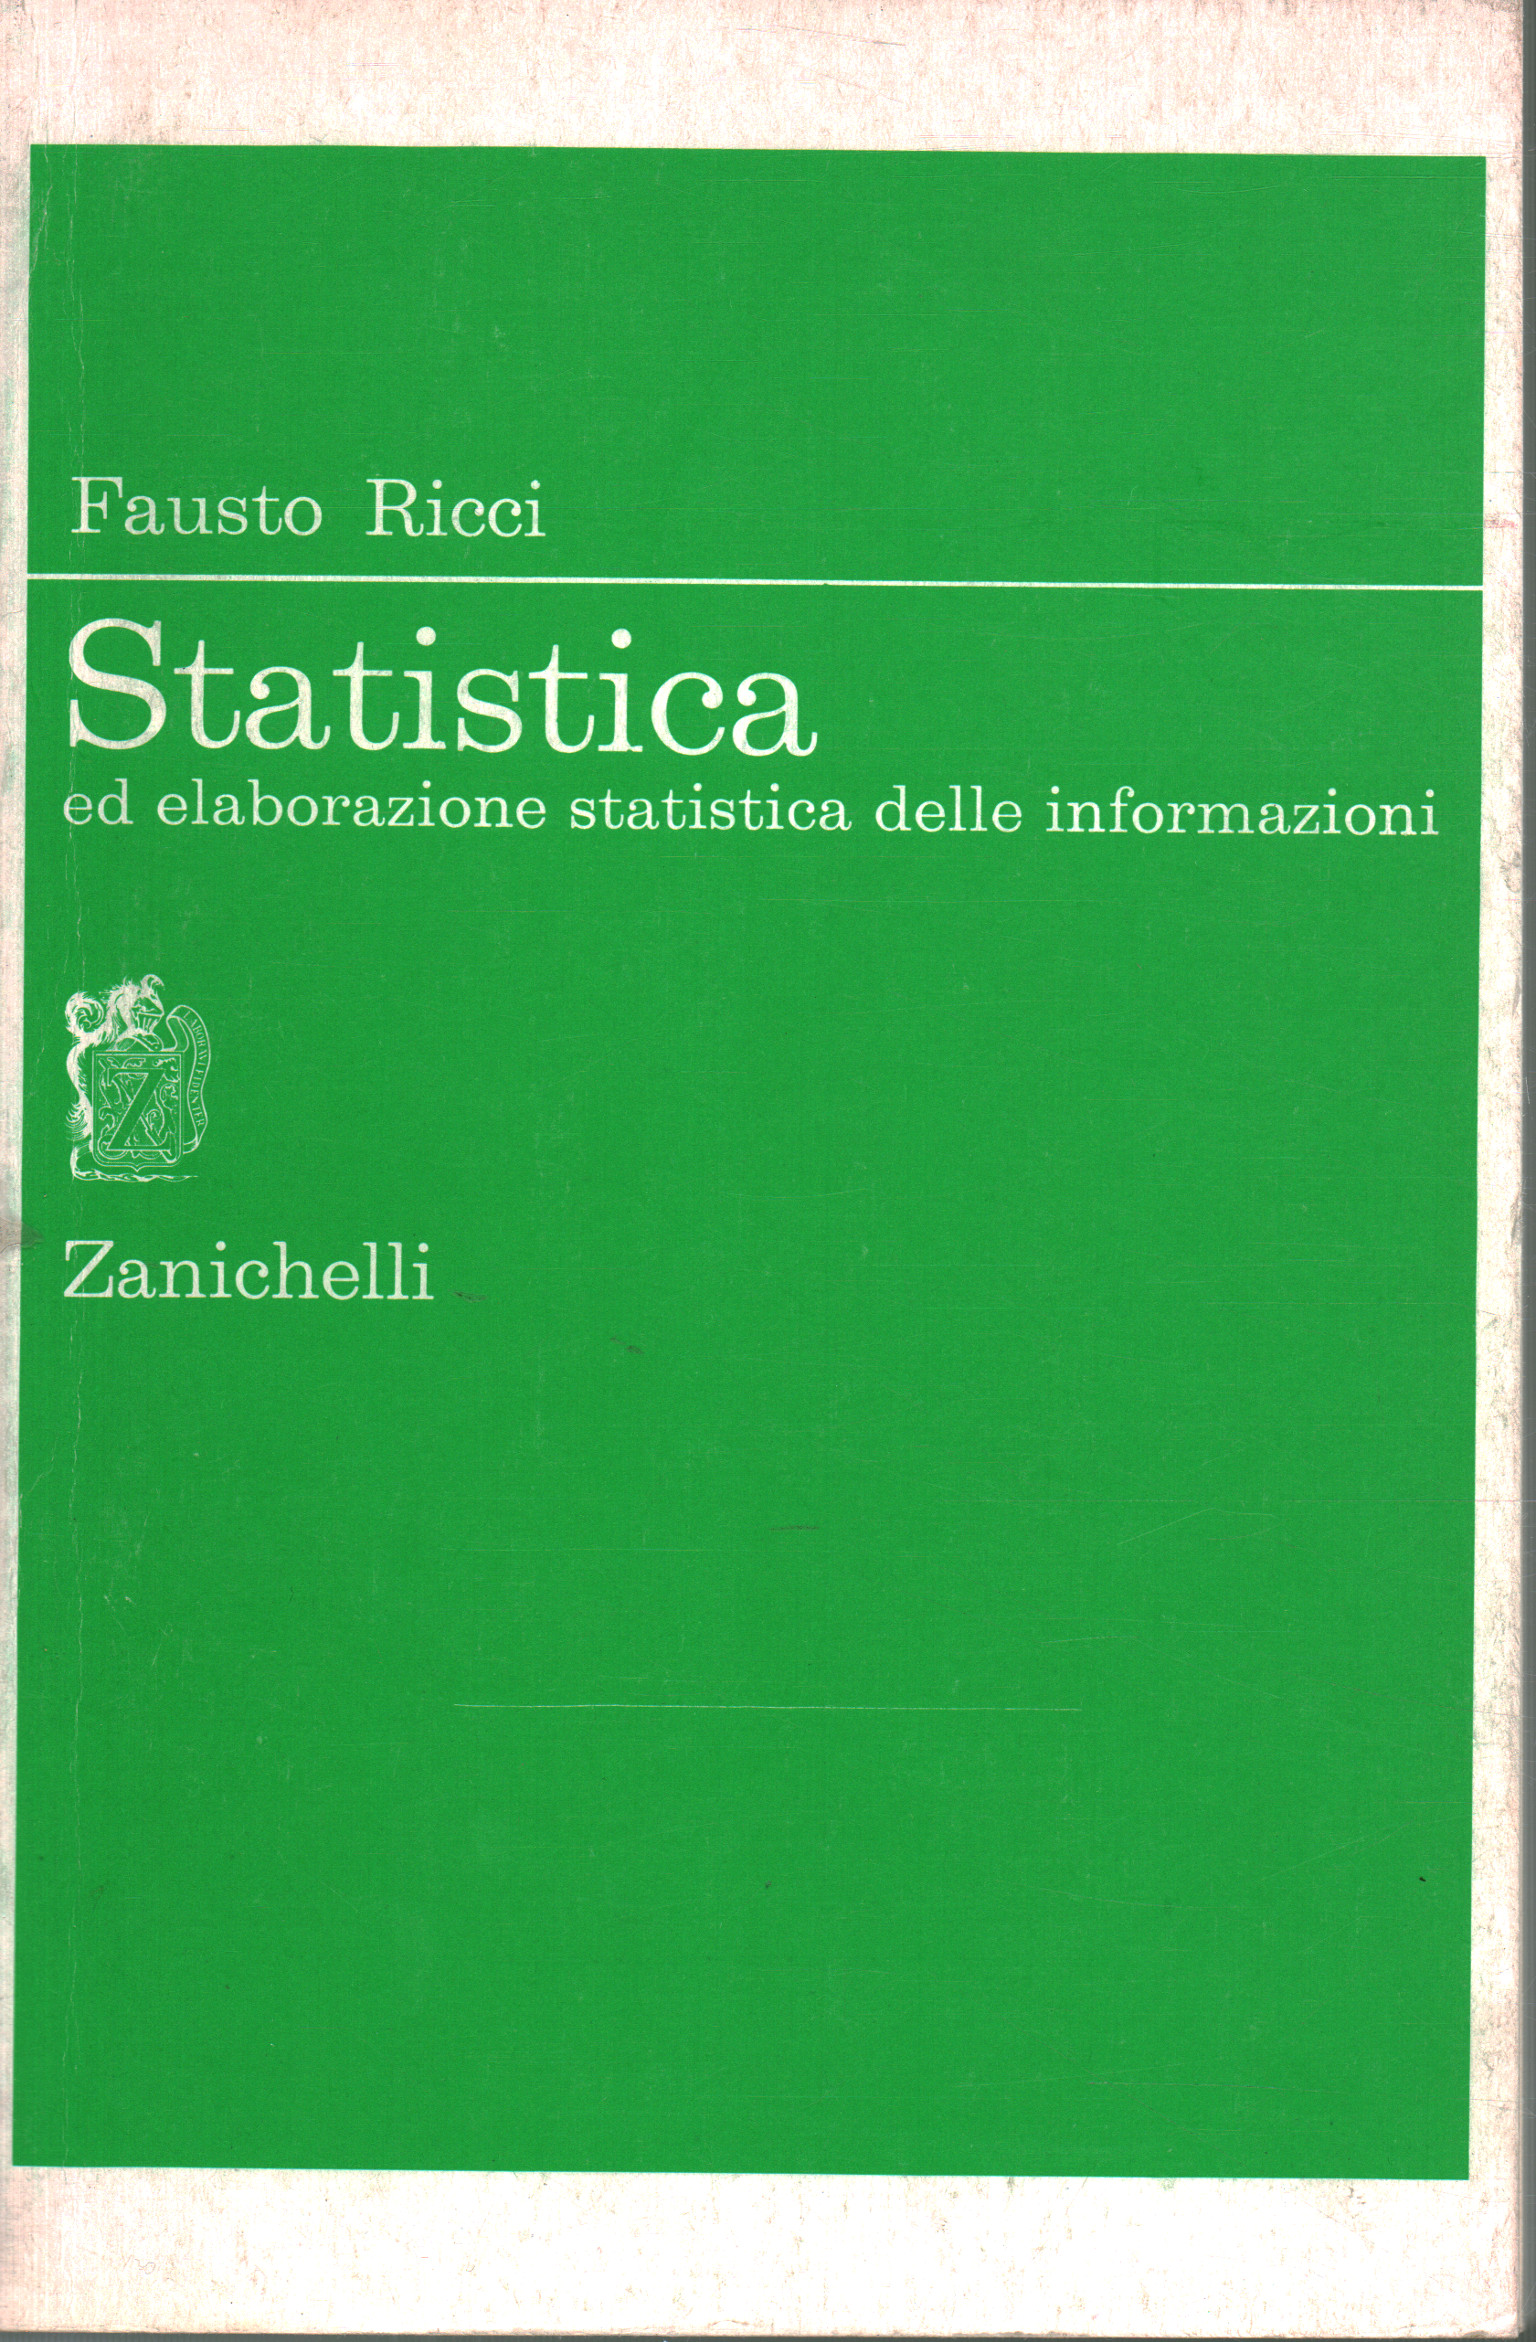 Statistics, Fausto Ricci